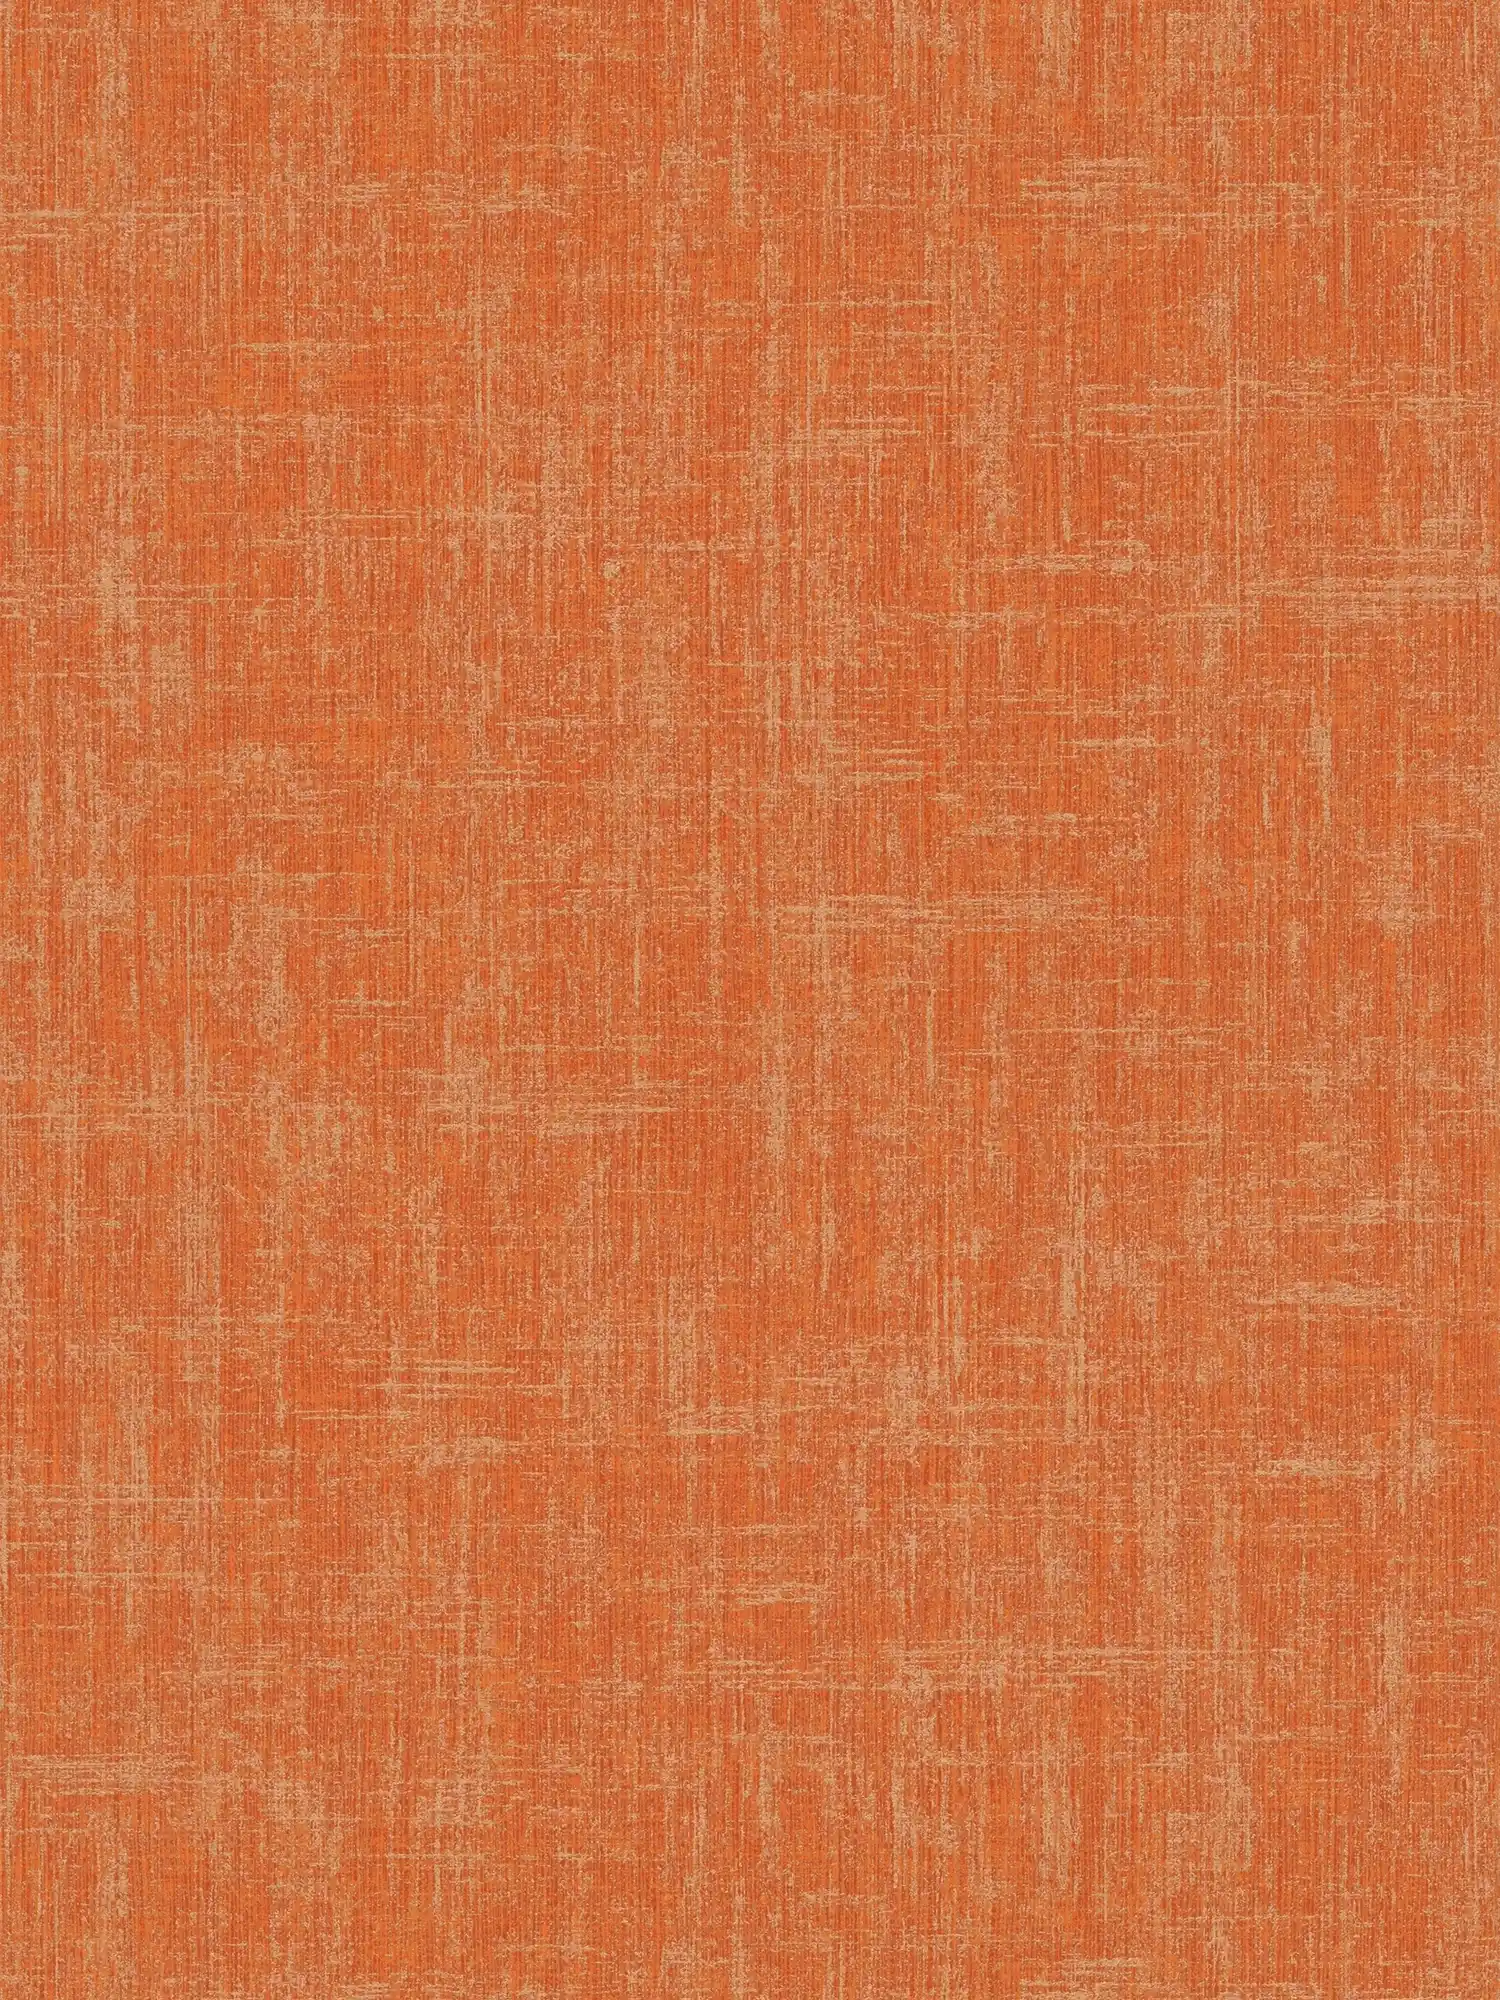 Orange Tapete mit Leinenstruktur Design
